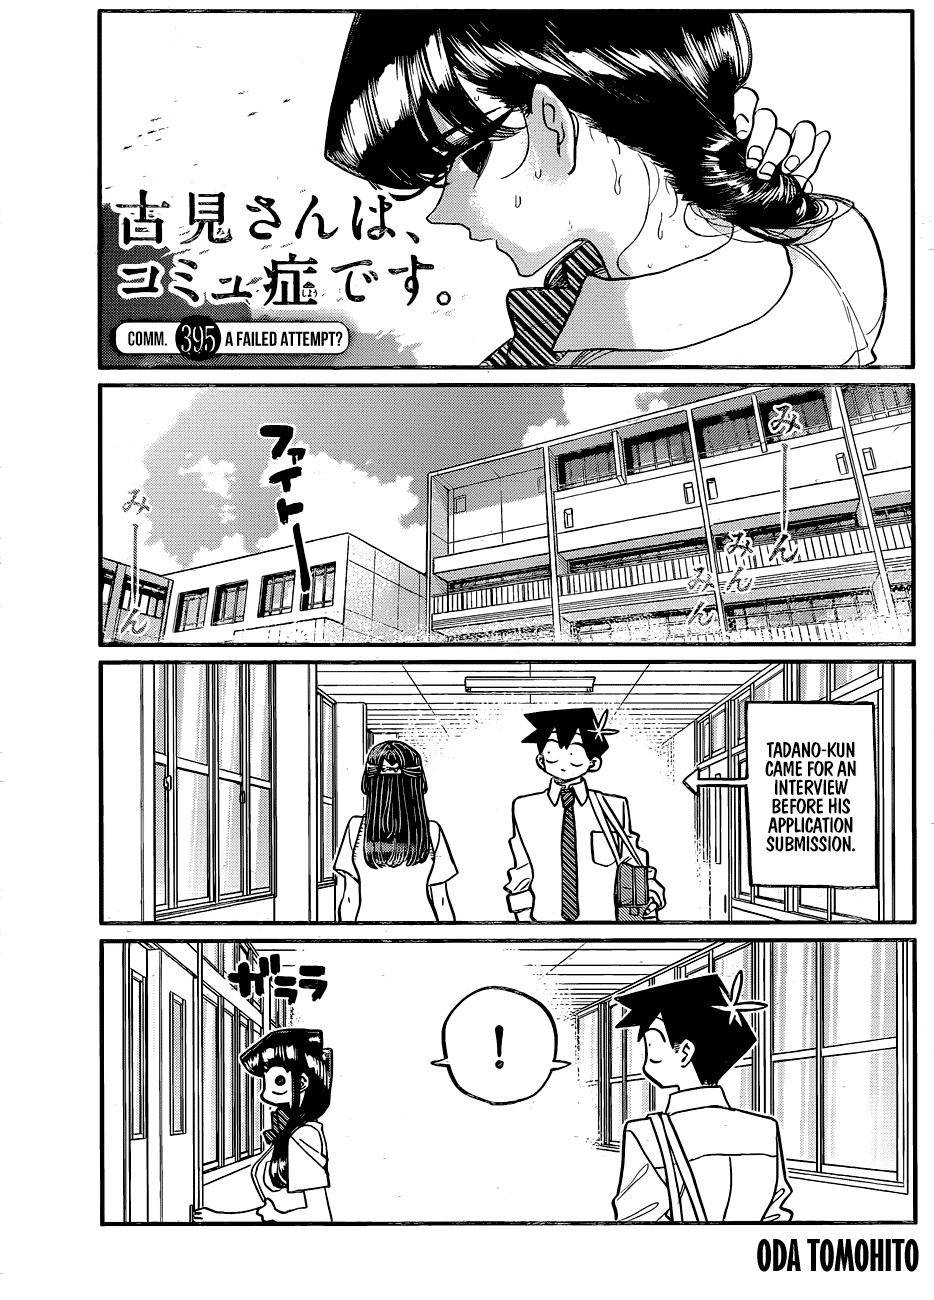 Komi-san wa Komyushou Desu Manga Chapter 395